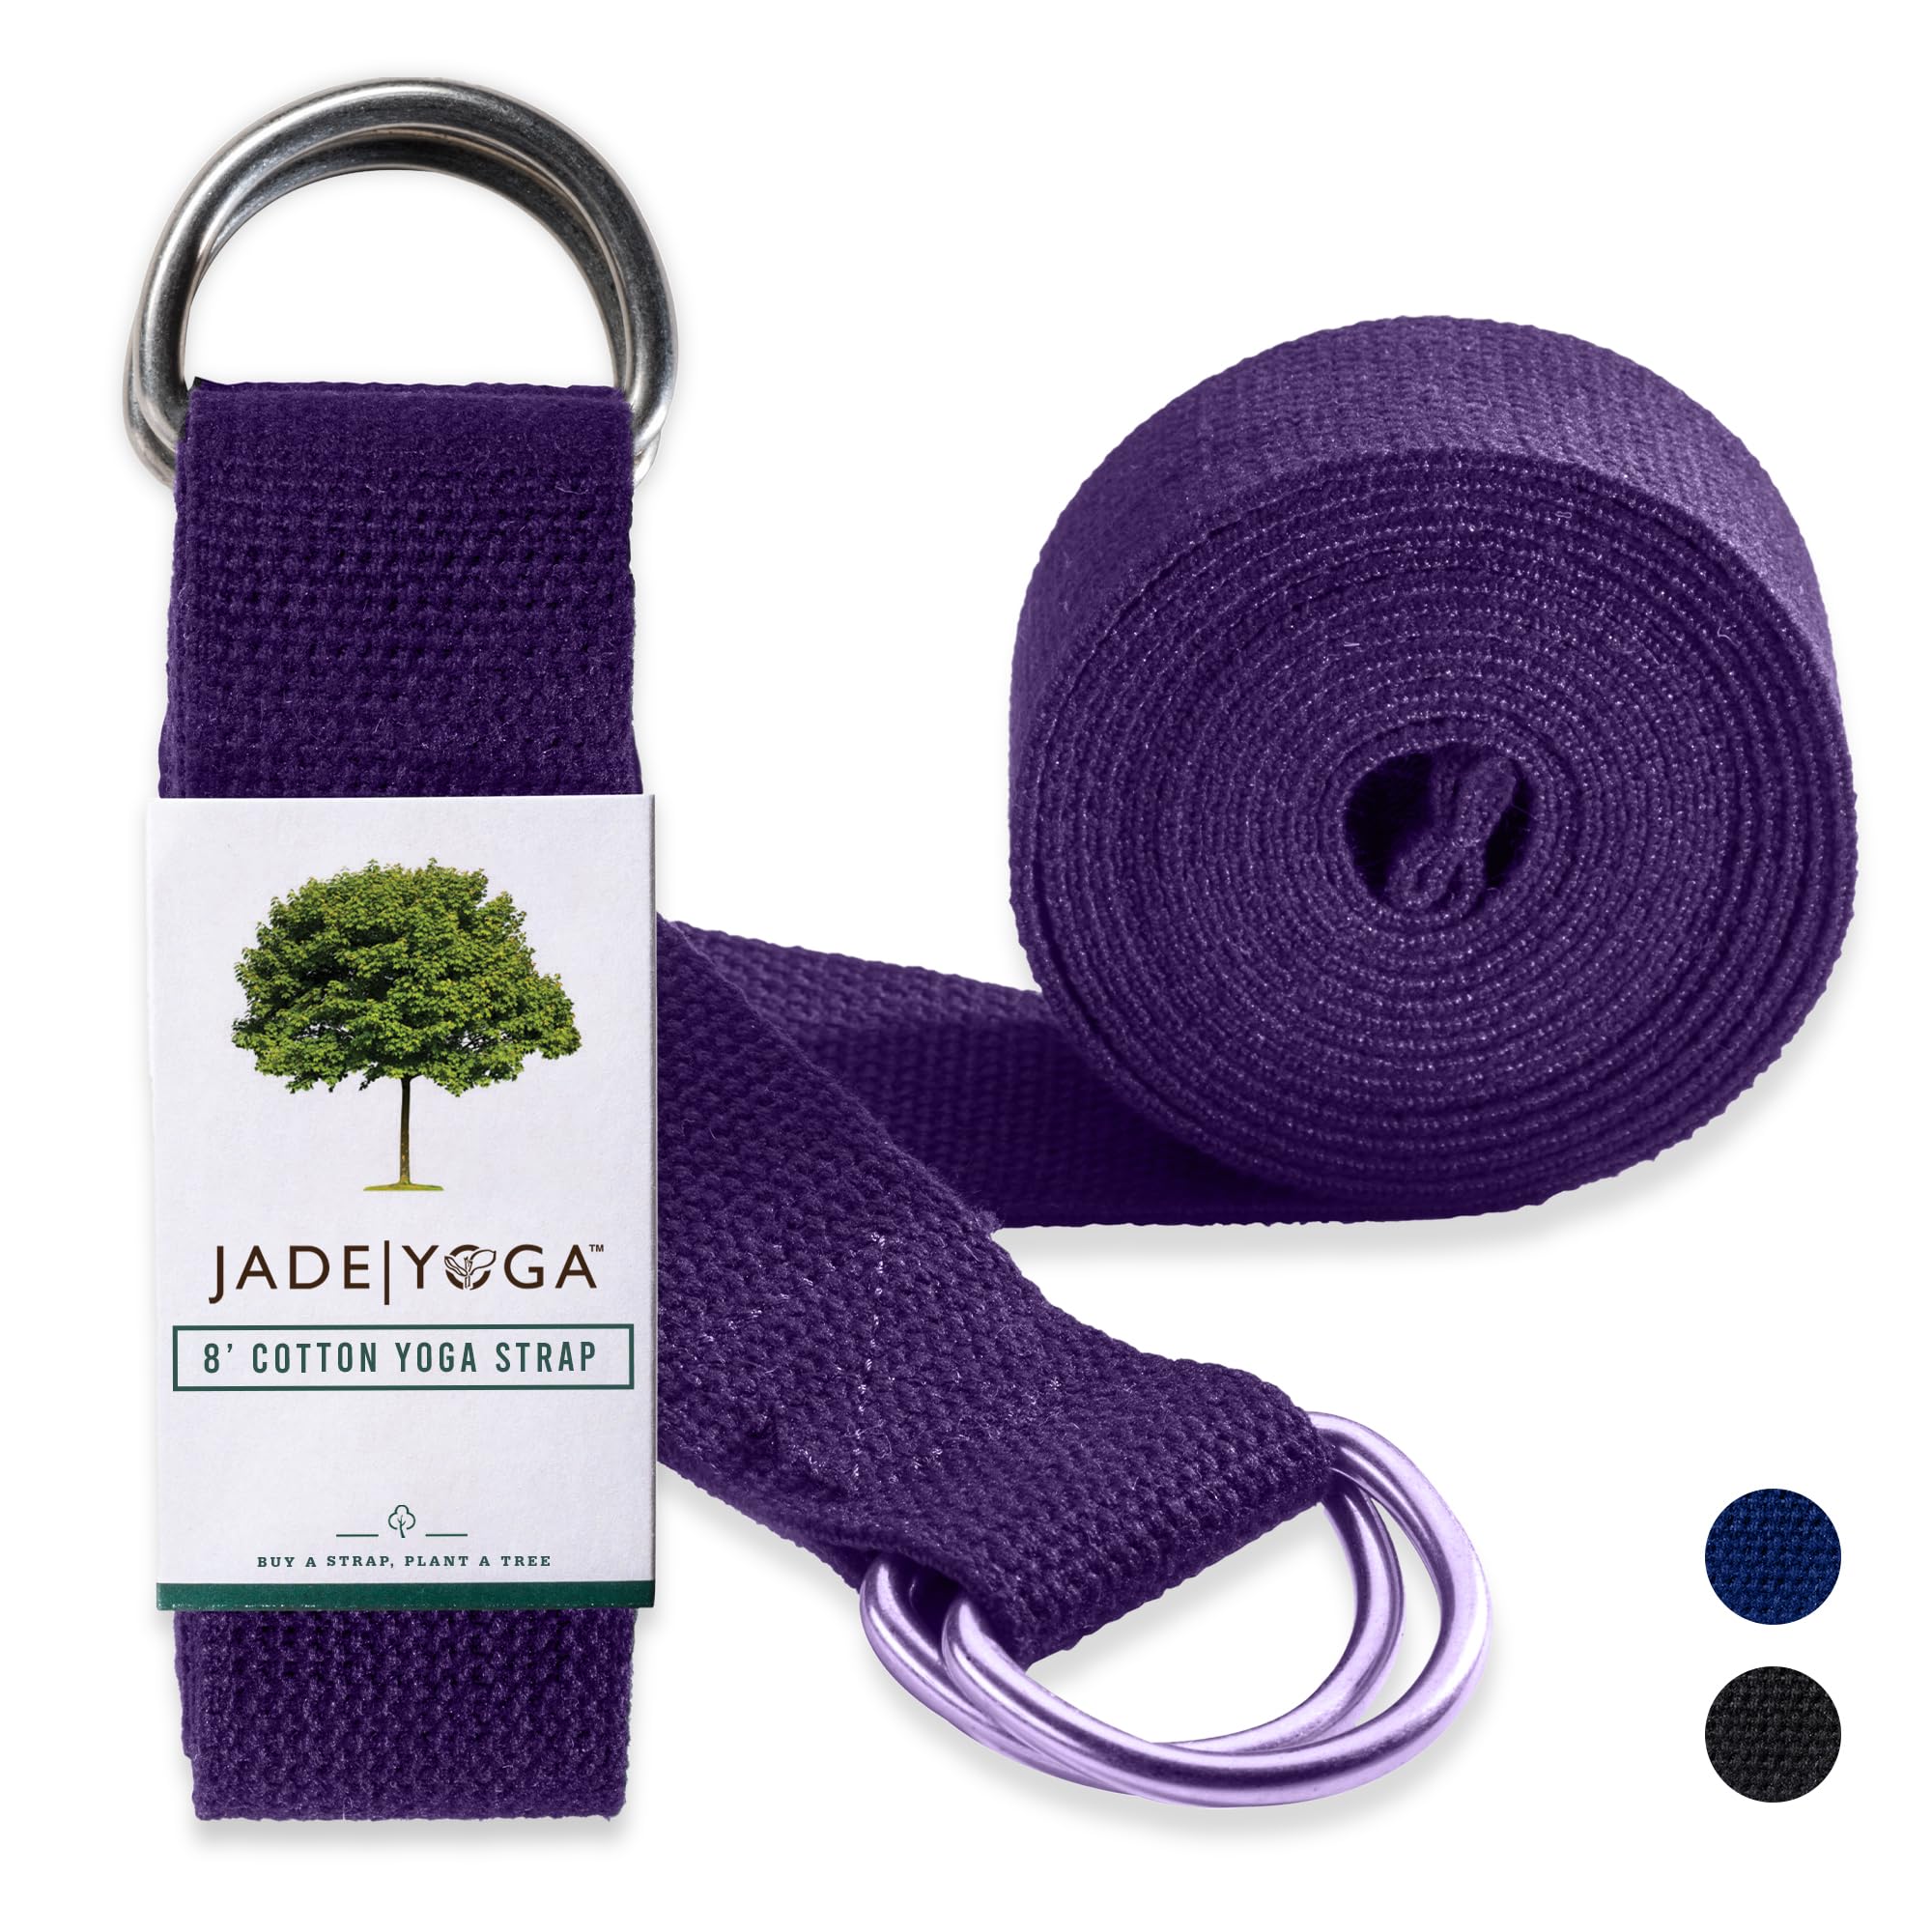 Jade Yoga Strap 2,4 m schwarzer Stretch-Gurt Trainingsgürtel für Beine, Fitness, Fitnessstudio, athletisch (lila)